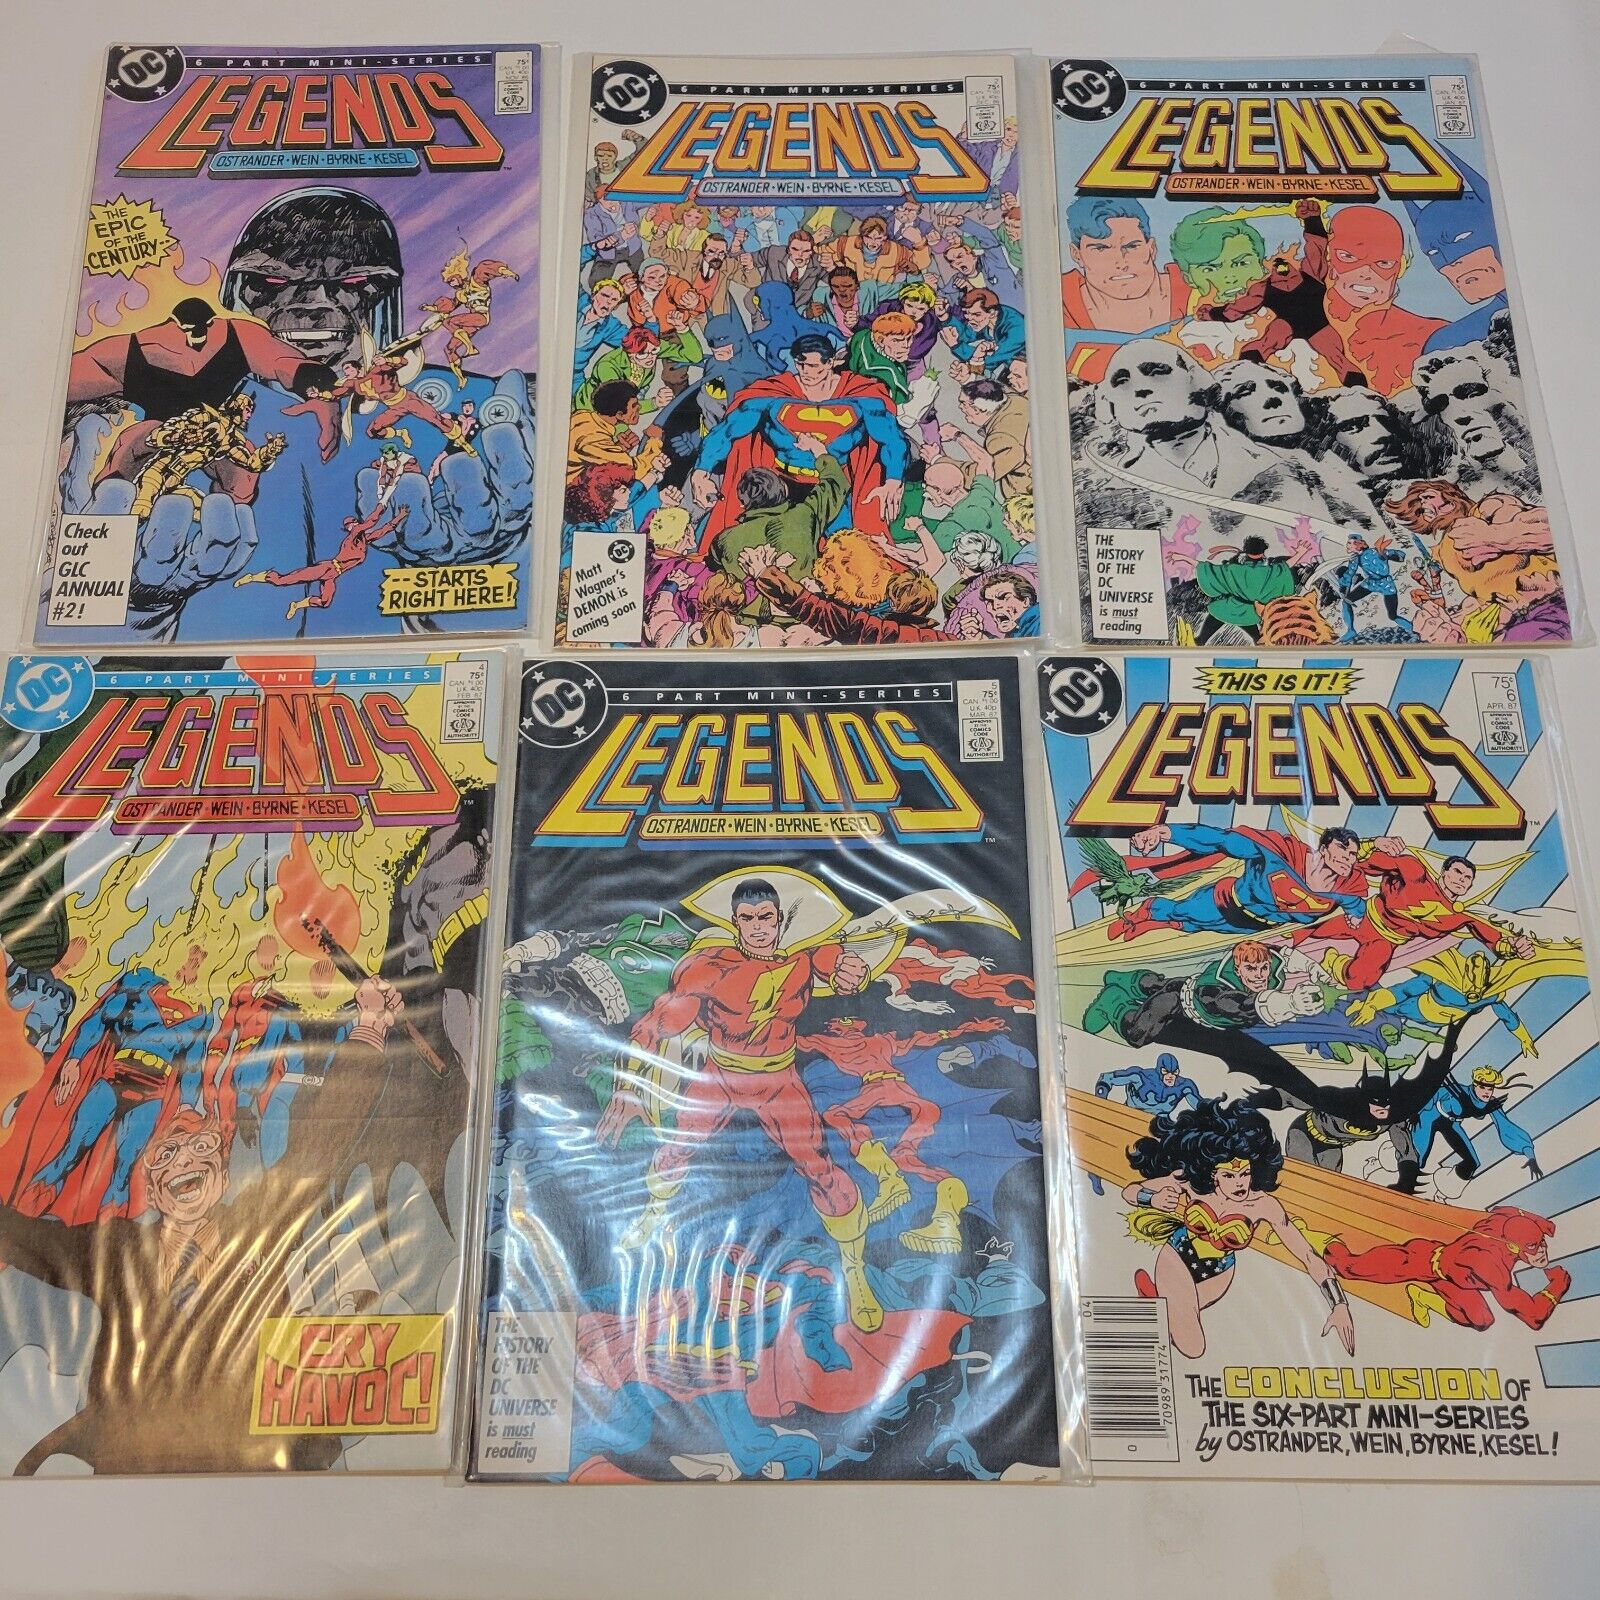 LEGENDS comics 1-6 of 6-part mini series (DC, 86-87)